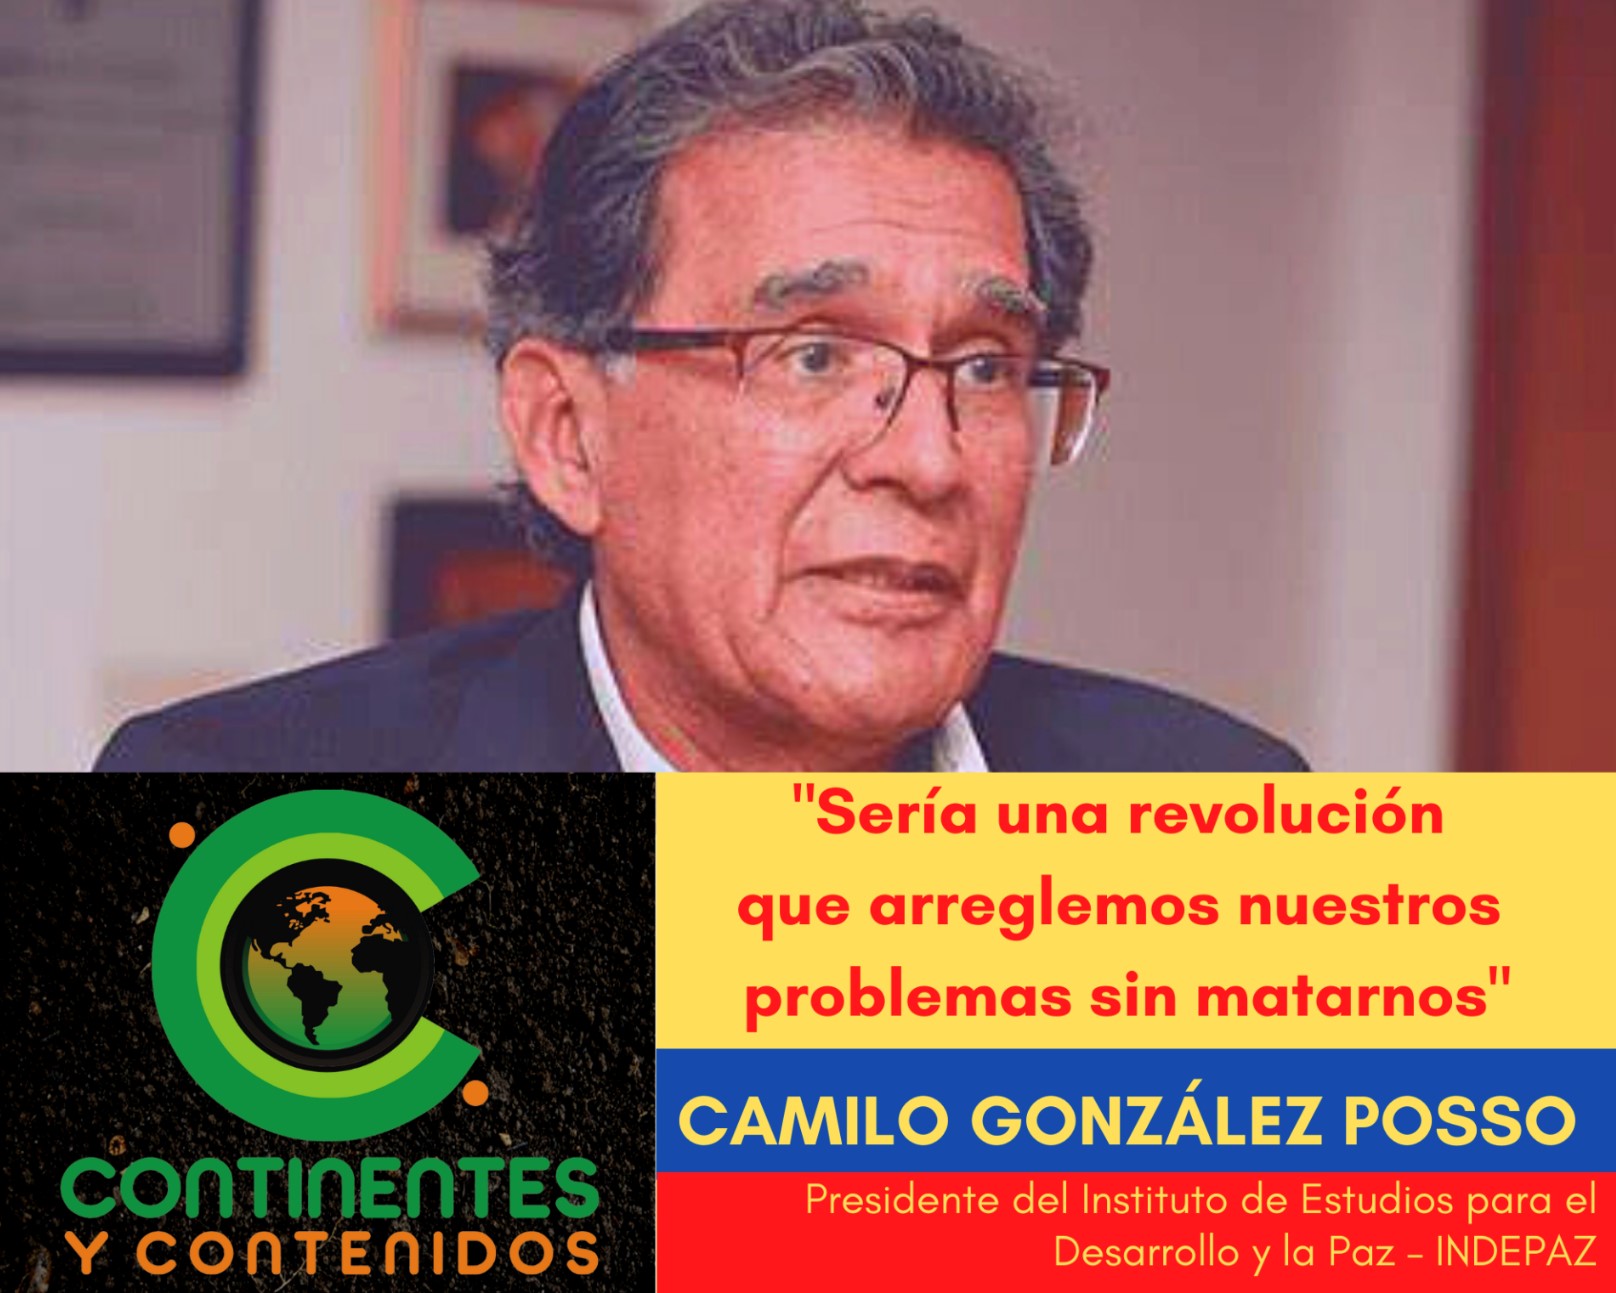 Camilo González Posso » En Colombia hay un estado de cosas no constitucional, no hay un régimen democrático»